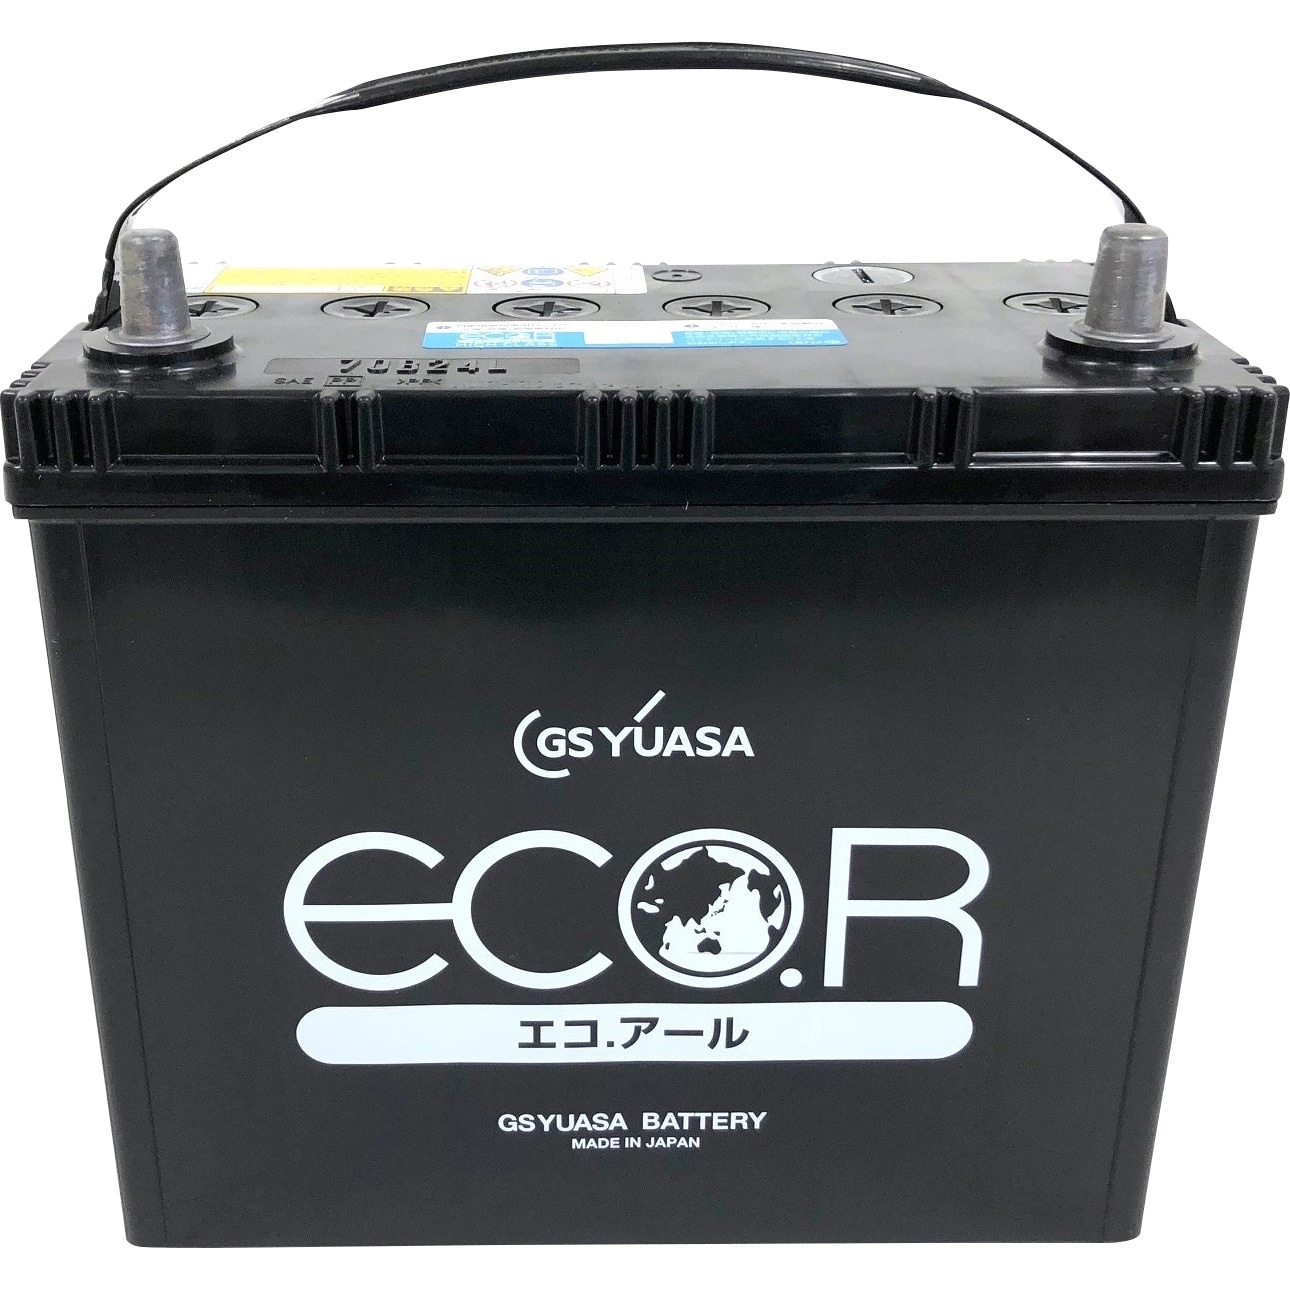 GSユアサ アコードワゴン CM2 カーバッテリー GSユアサ エコR ハイクラス EC-70B24L GS YUASA ECO.R HIGH CLASS ECOR ACCORD WAGON 車用バッテリー